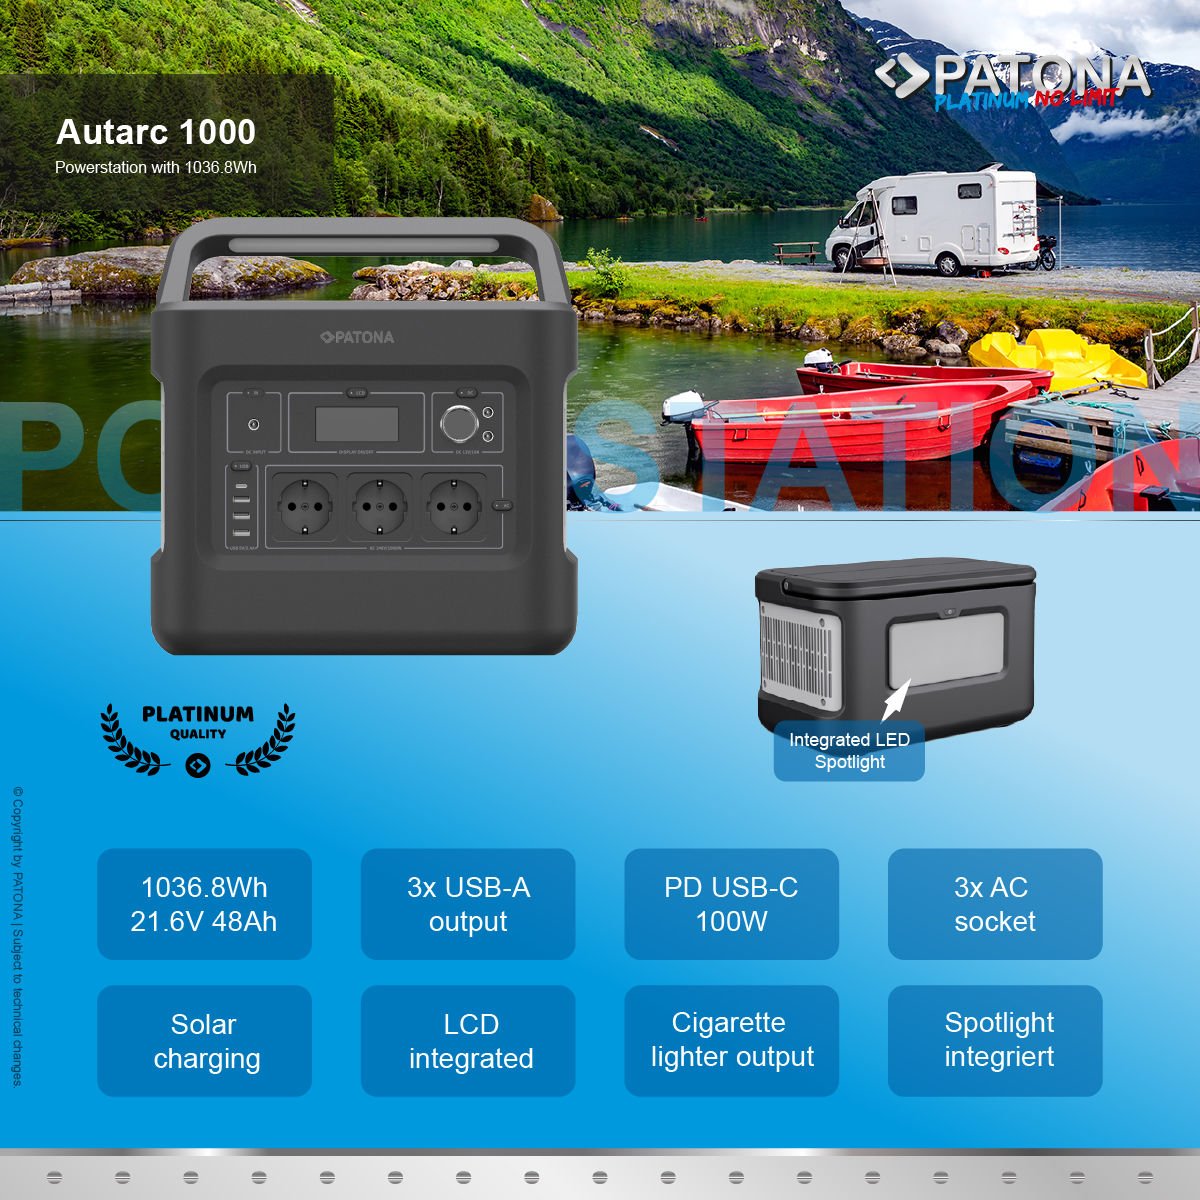 Patona 9989 Platinum Powerstation Autarc Taşınabilir Güç İstasyonu 1000W